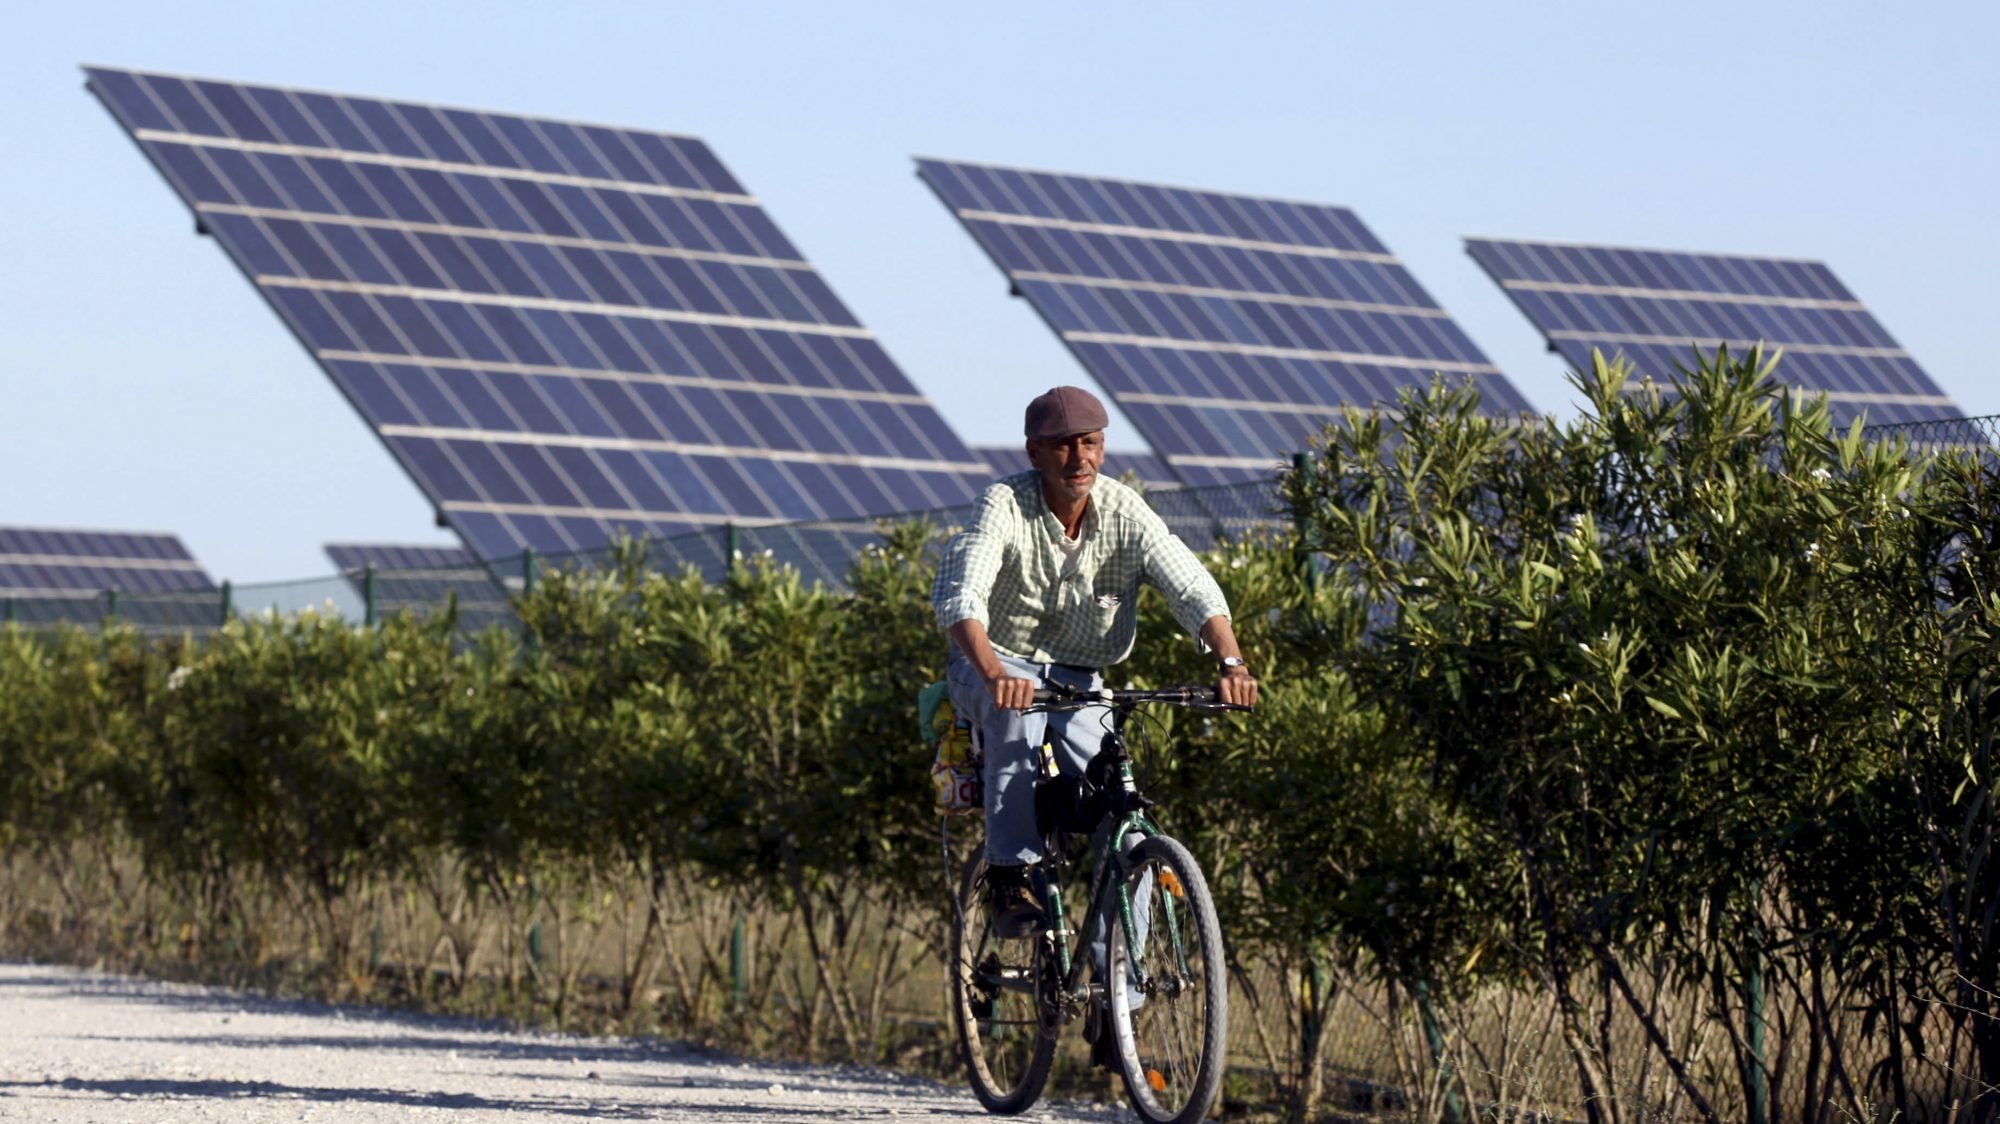 O projeto da nova central solar é promovido por duas empresas, a IncognitWorld Unipessoal e a Qsun Portugal 4 Unipessoal, que pretendem investir 156,4 milhões de euros na construção desta central solar fotovoltaica